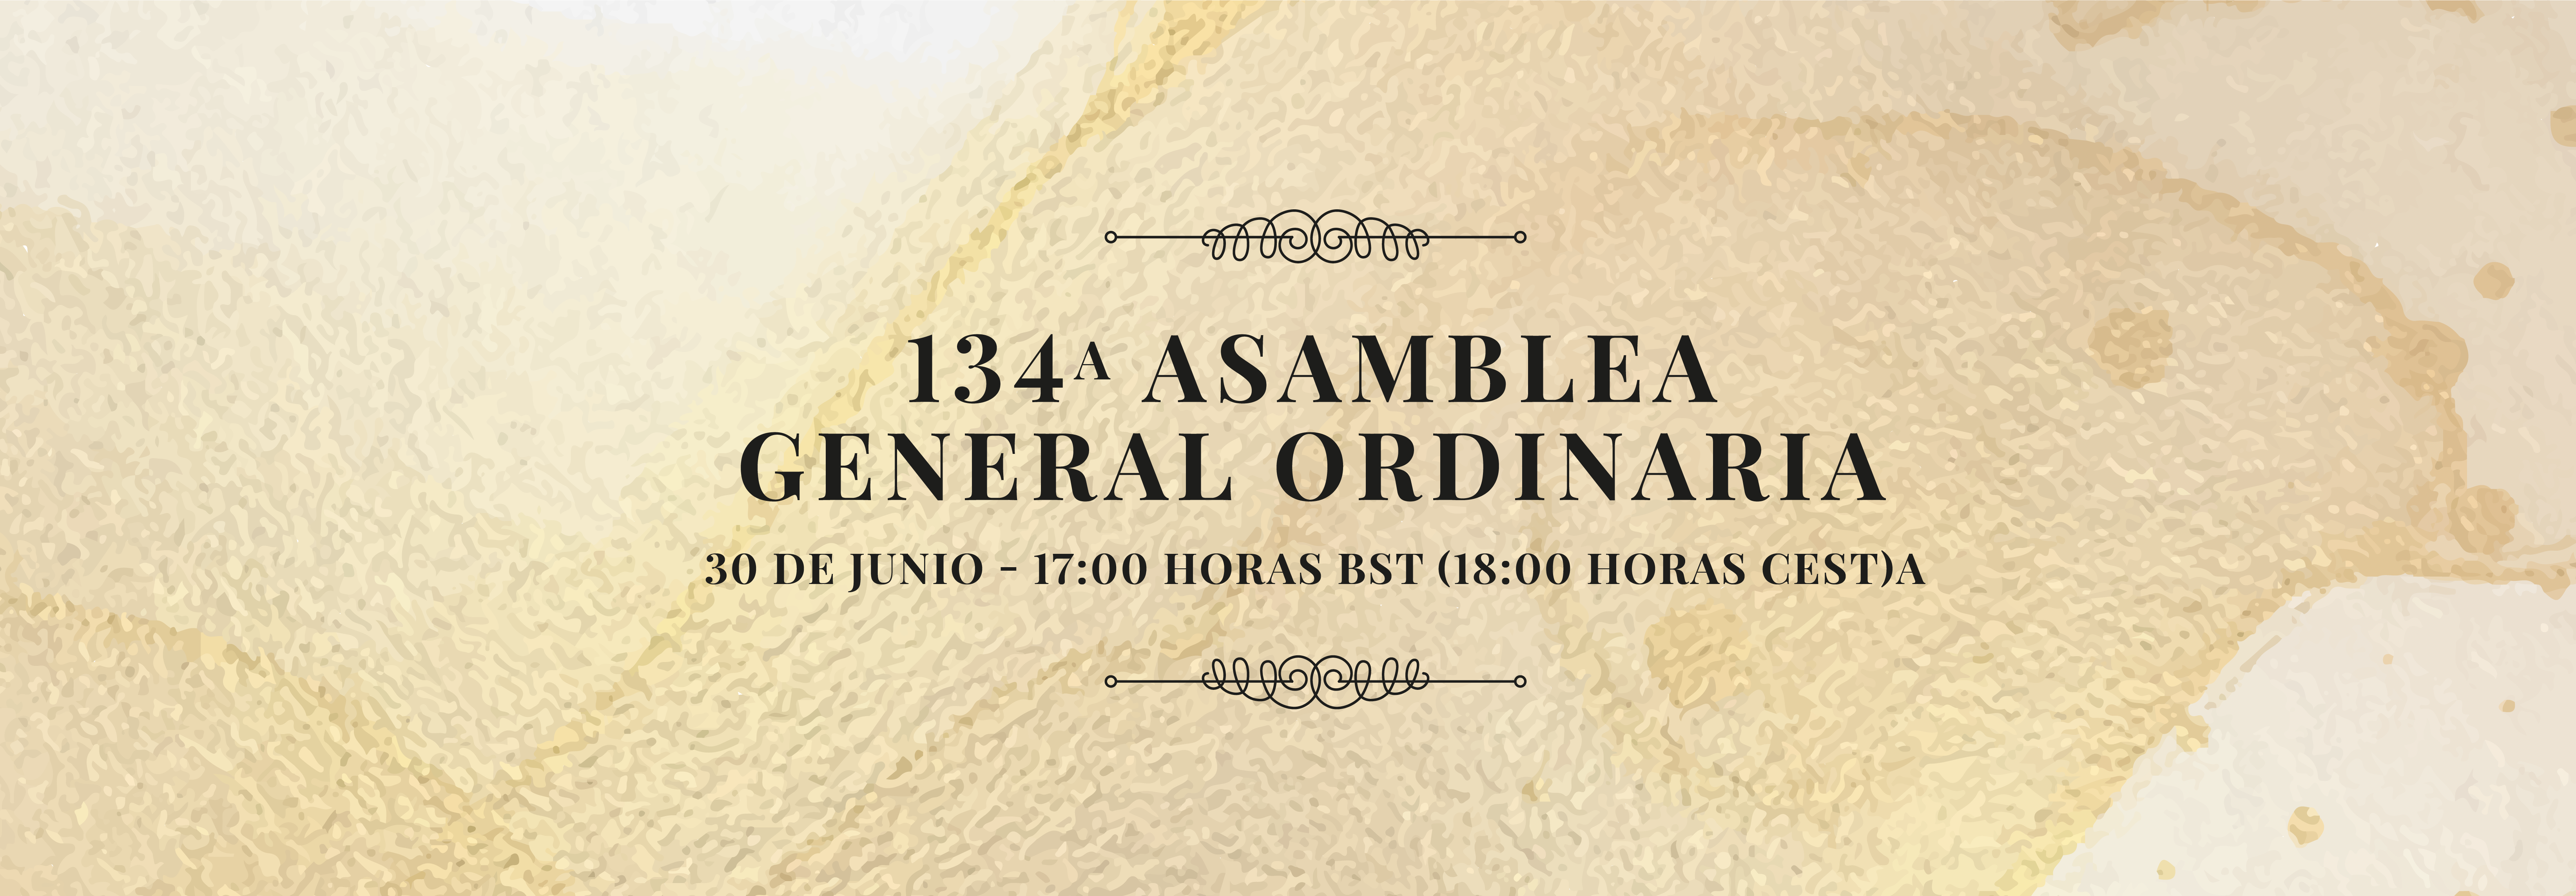 134a ASAMBLEA GENERAL ORDINARIA